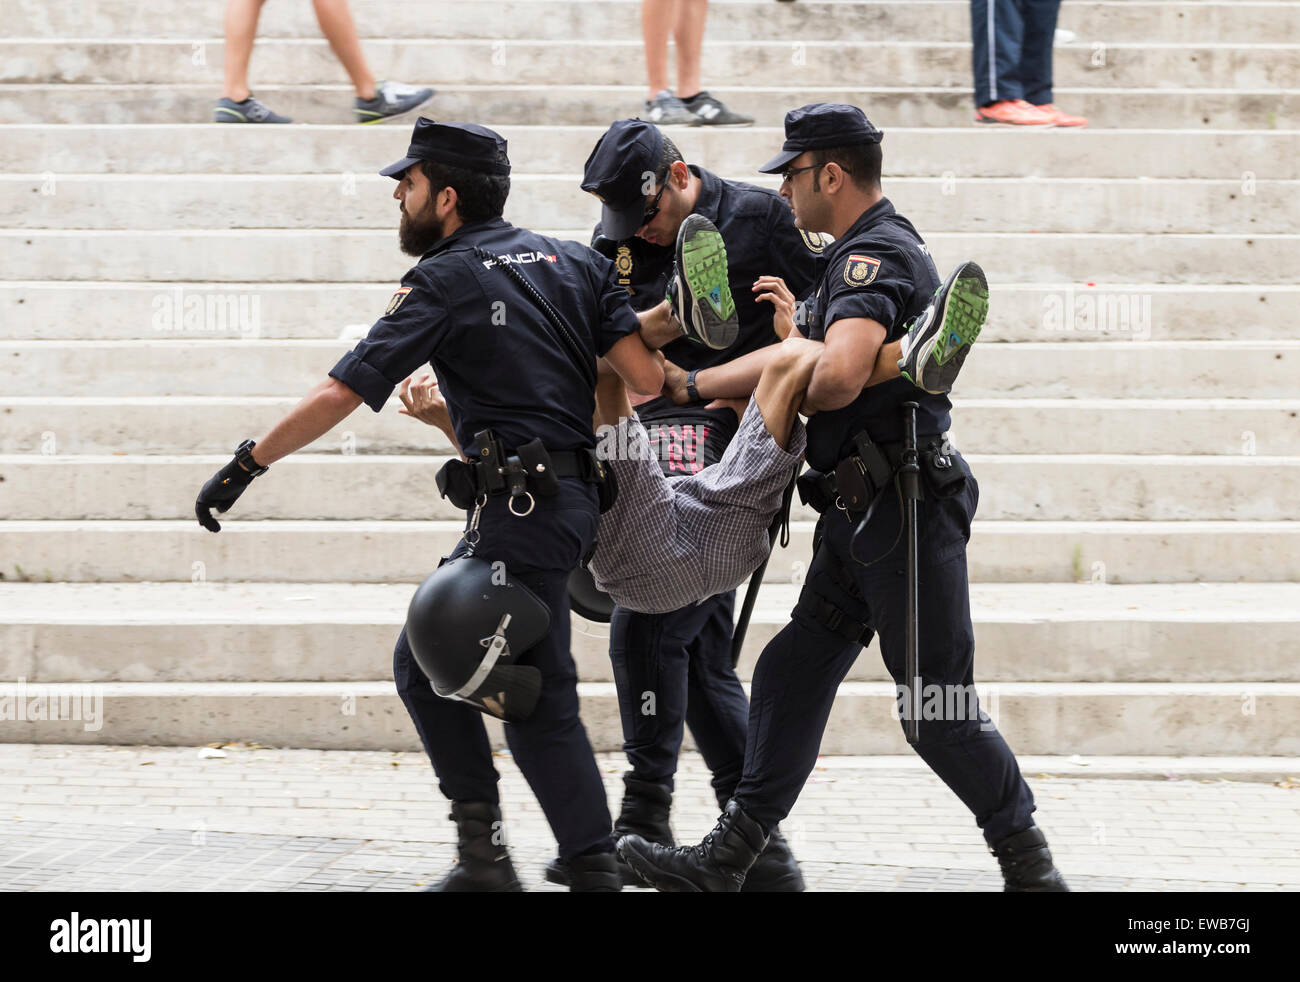 Spanisch Policia Nacional (Nationale Polizei), ein Unterstützer während der Störung außerhalb Fußballstadion. Stockfoto